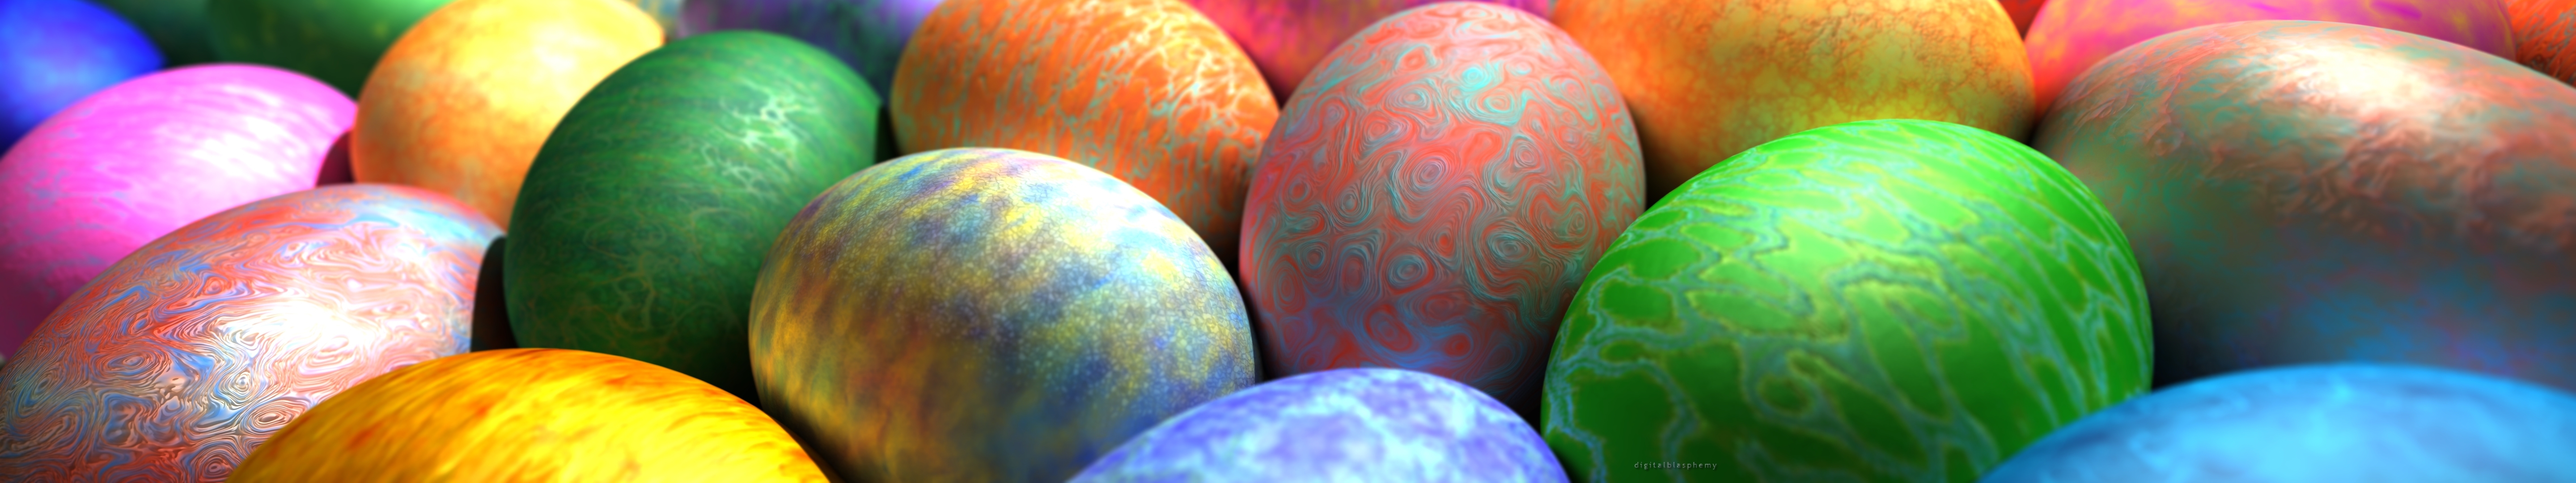 Wallpaper Eggs Easter